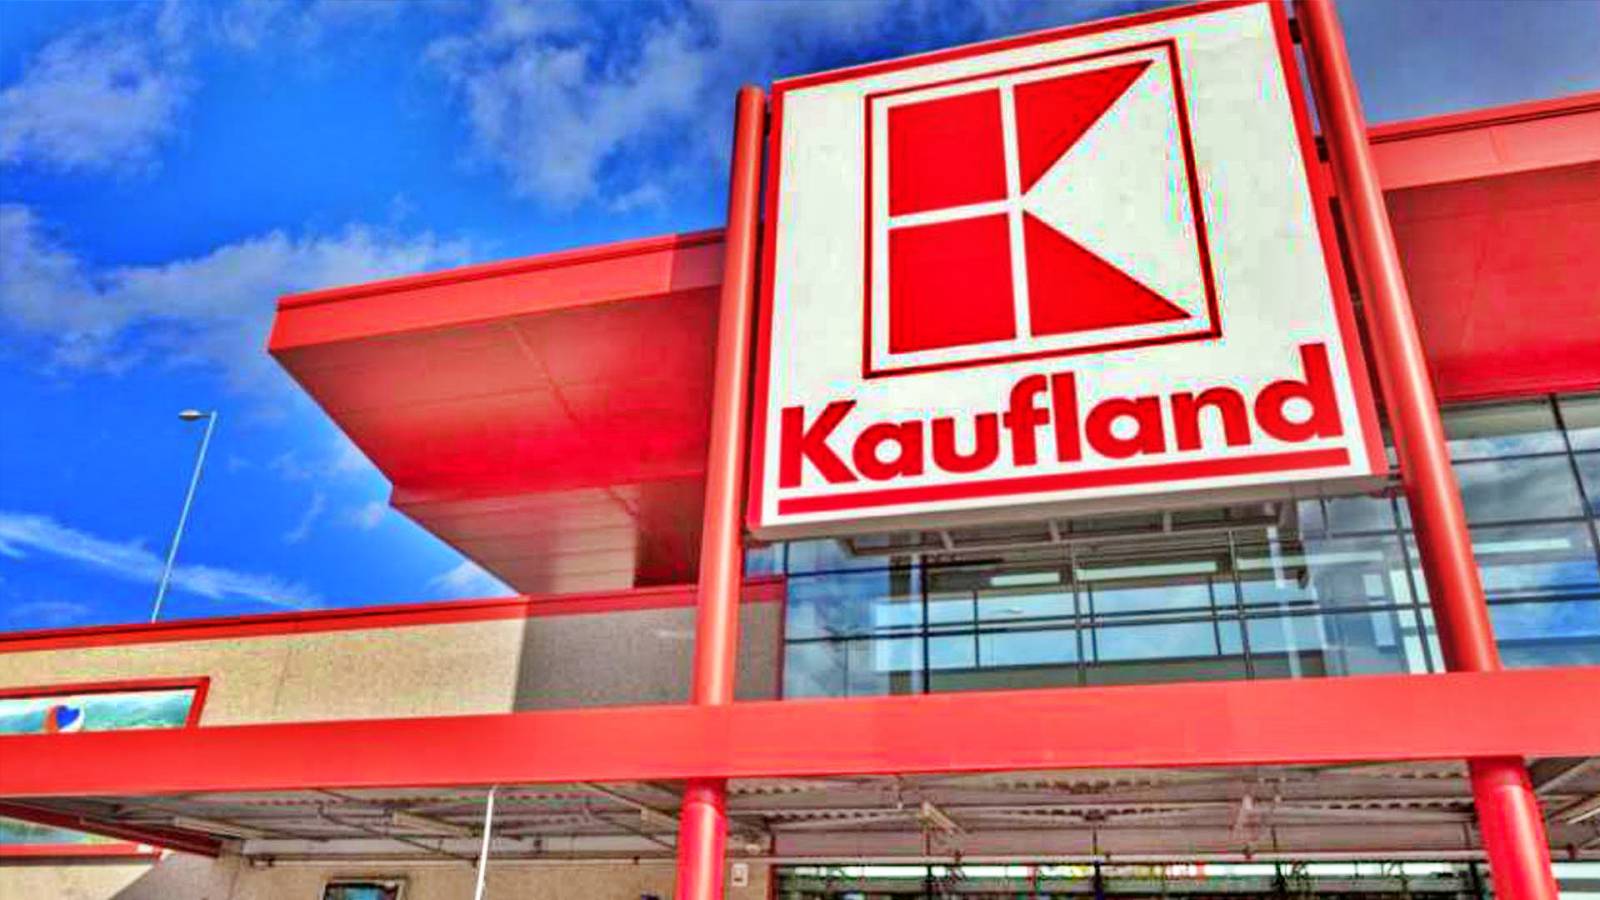 Kaufland Roumanie a officiellement informé les mesures appliquées à tous les magasins